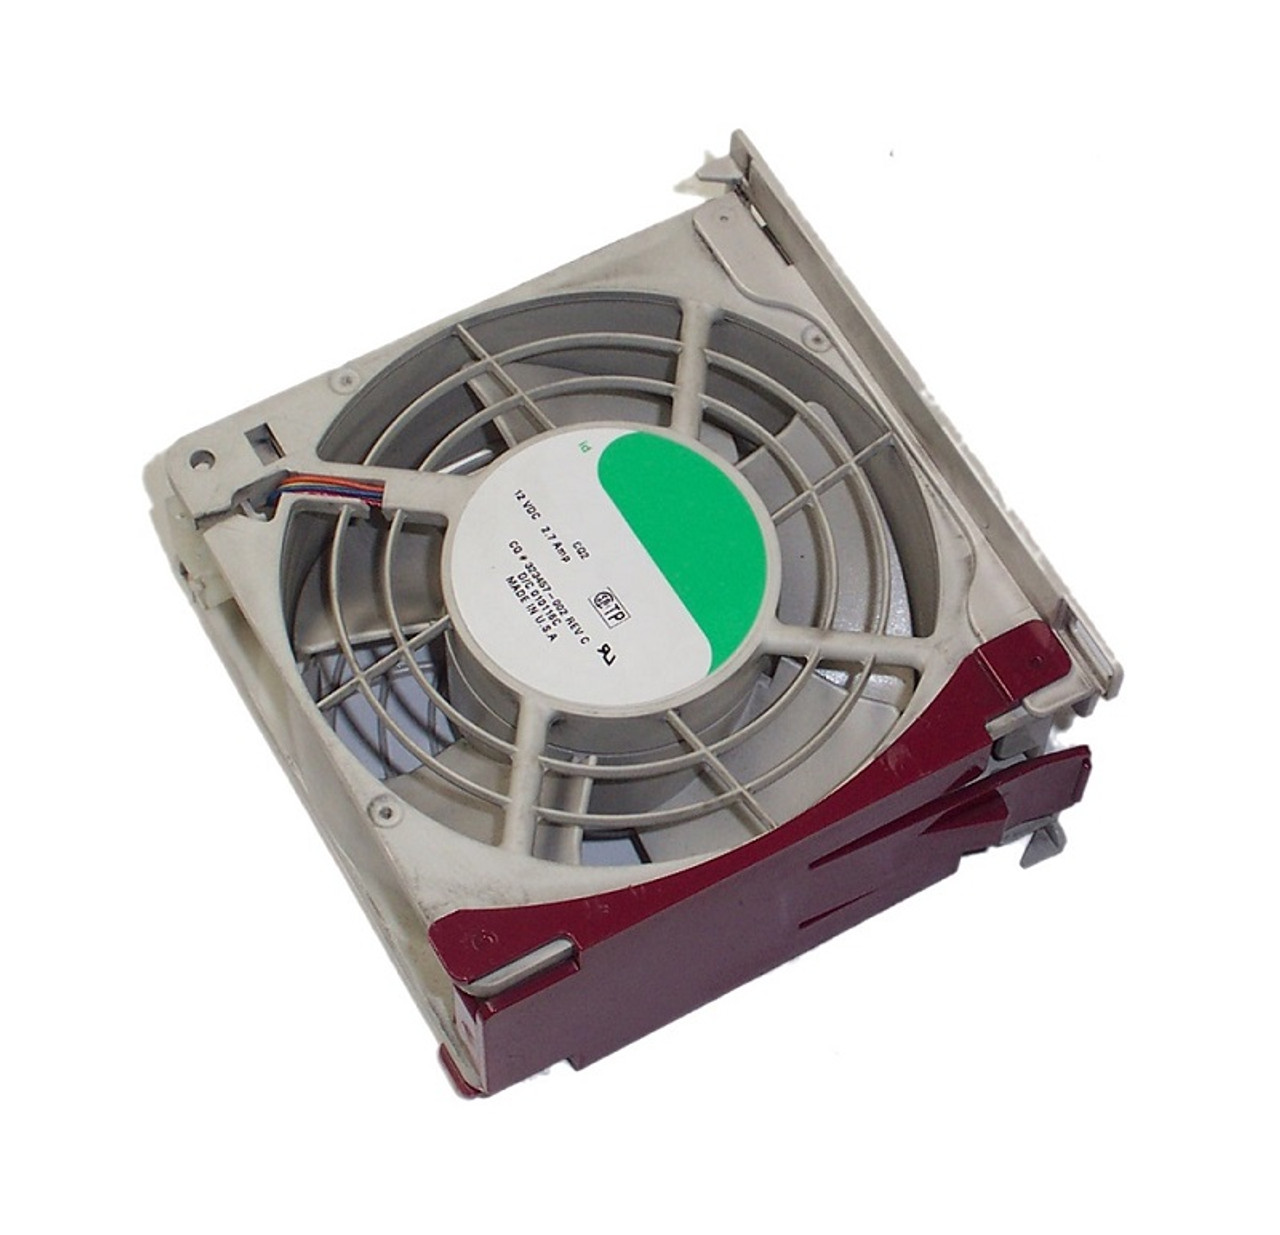 677059-001 - HP Fan for ProLiant DL160 G8